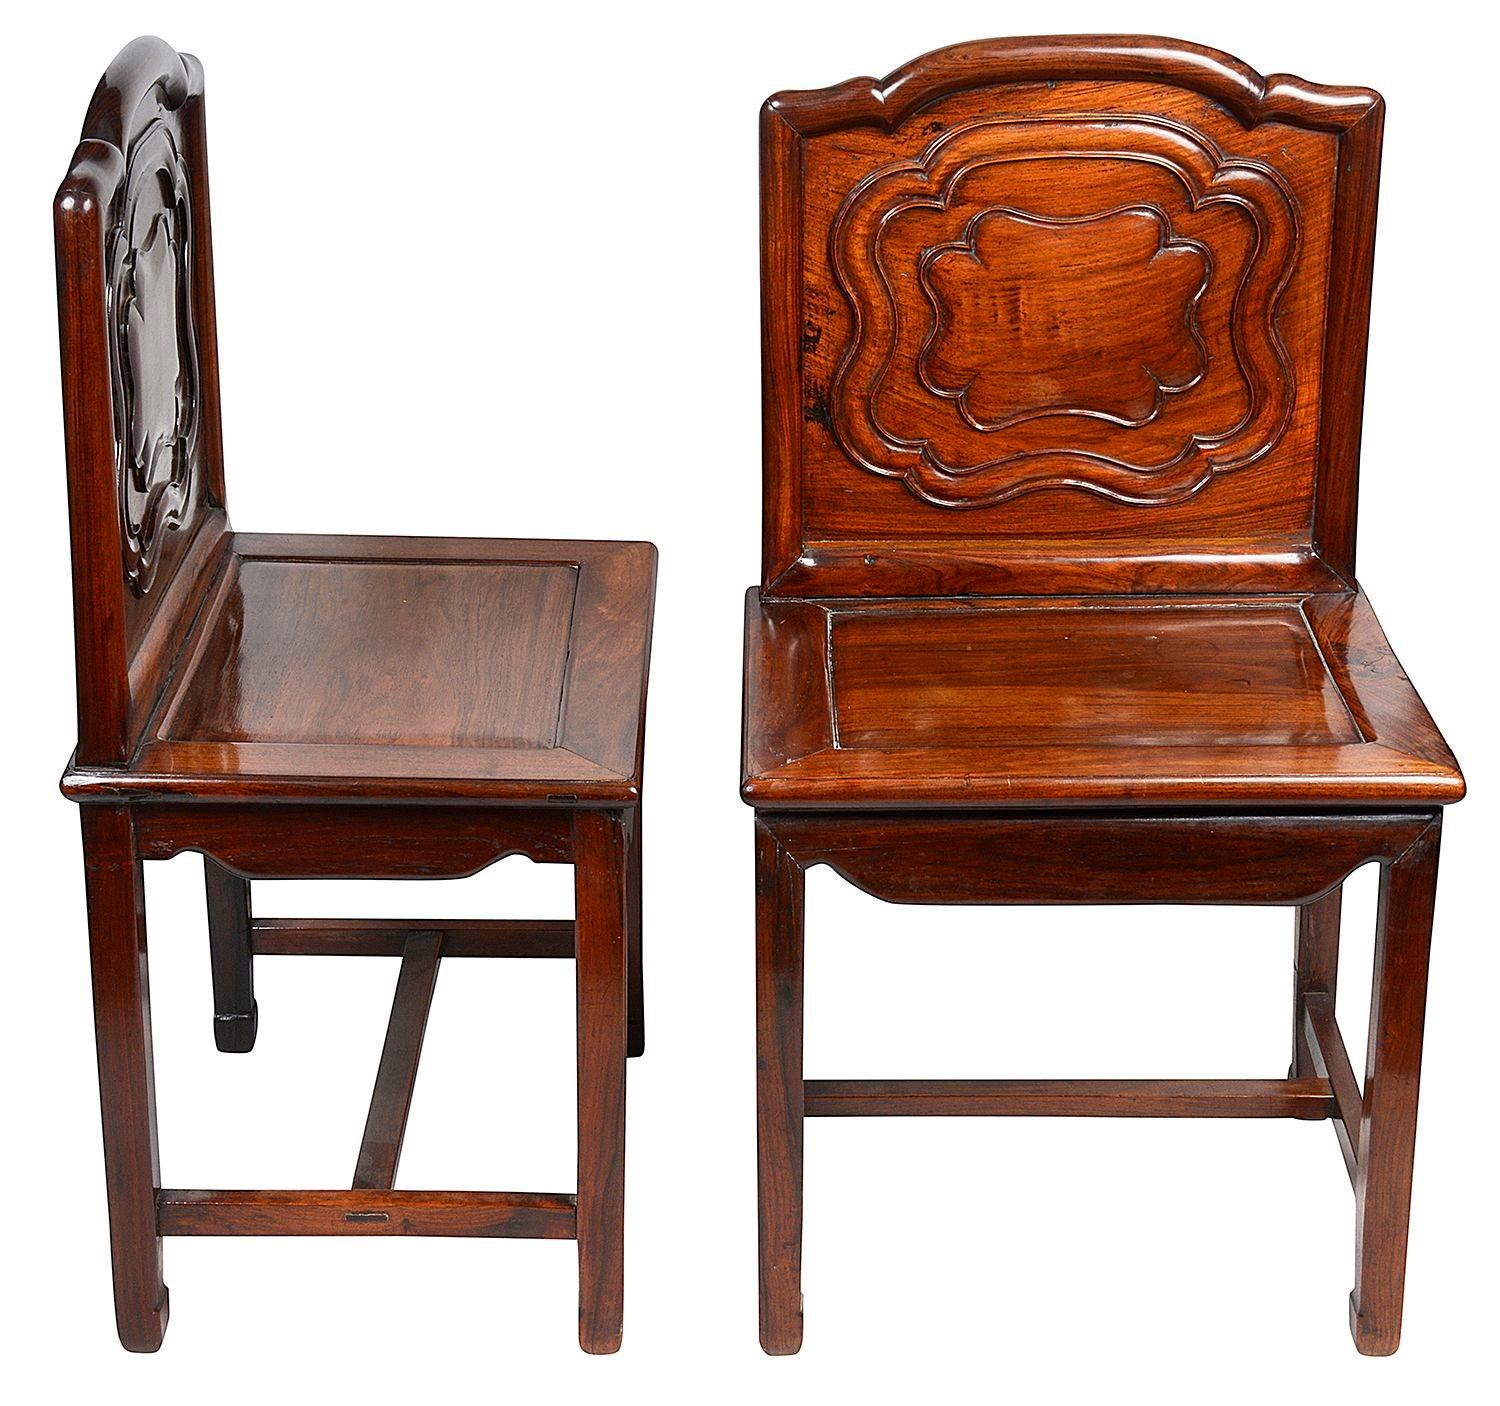 Très bonne paire de chaises d'appoint en bois dur chinois de la fin du XIXe siècle, chacune avec des panneaux sculptés à la main sur le dossier, des sièges à panneaux encastrés, reposant sur des pieds de section carrée, réunis par une entretoise en